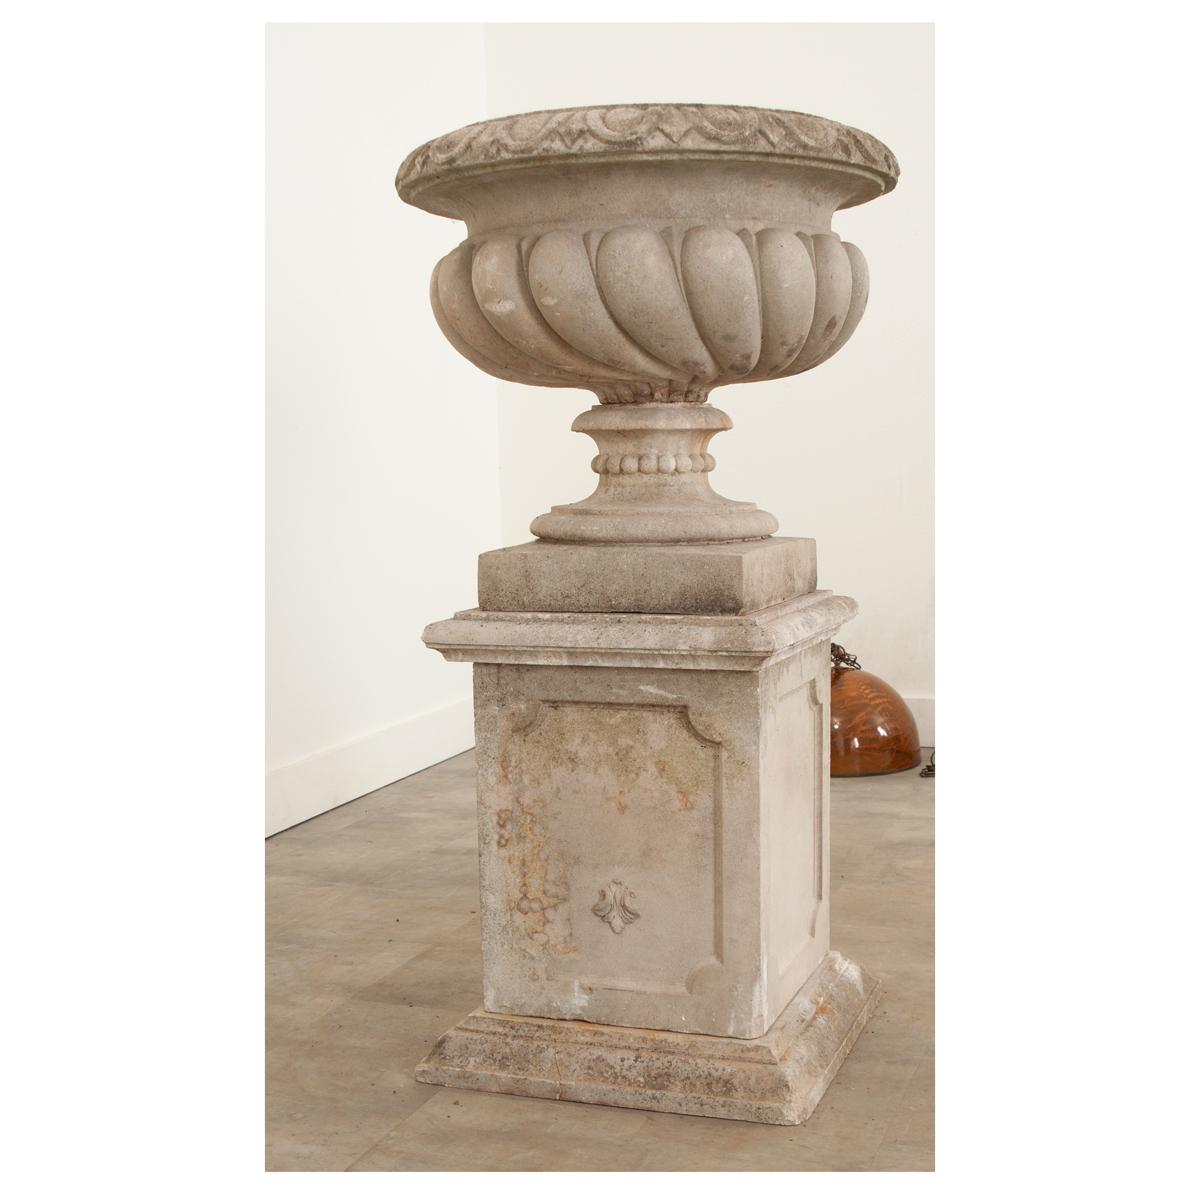 English Raised Garden Urn on Pedestal 8